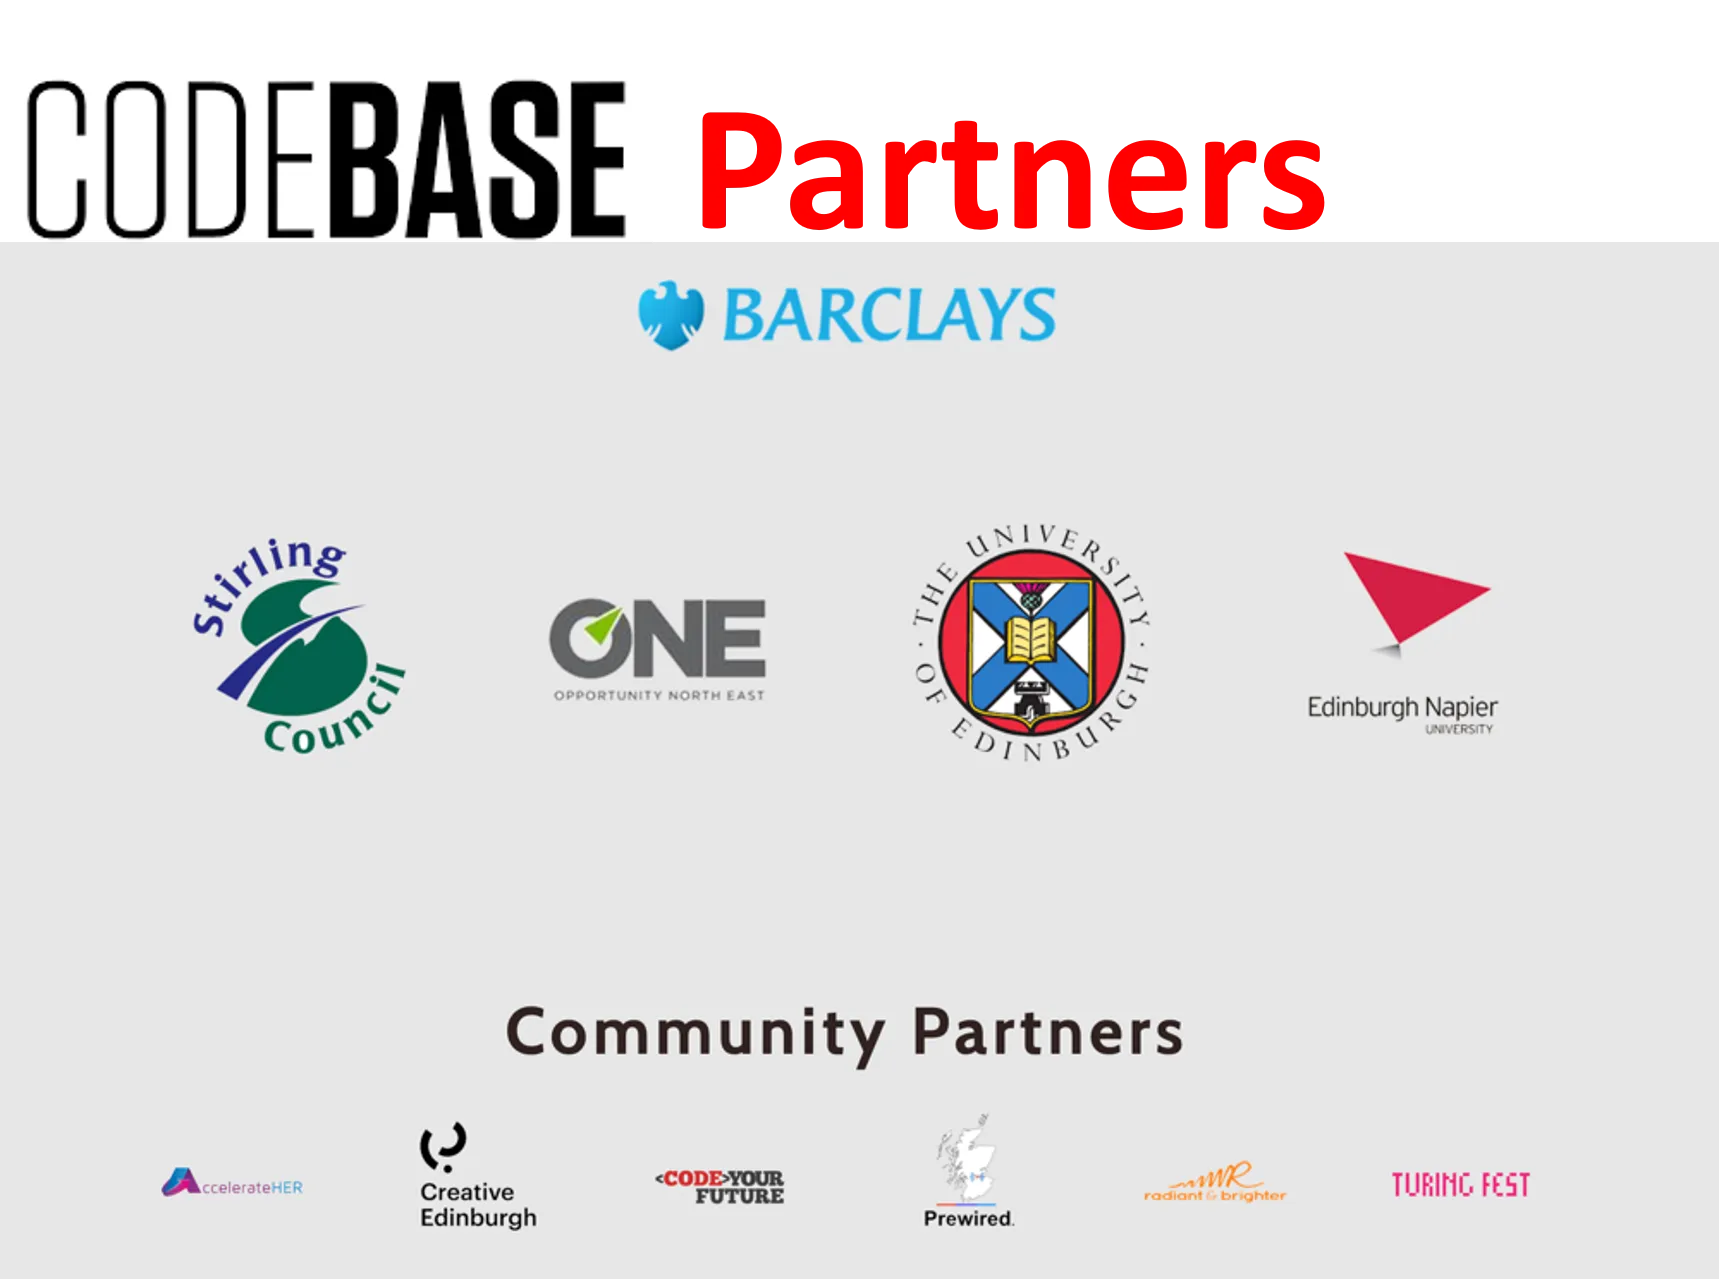 CodeBase partners